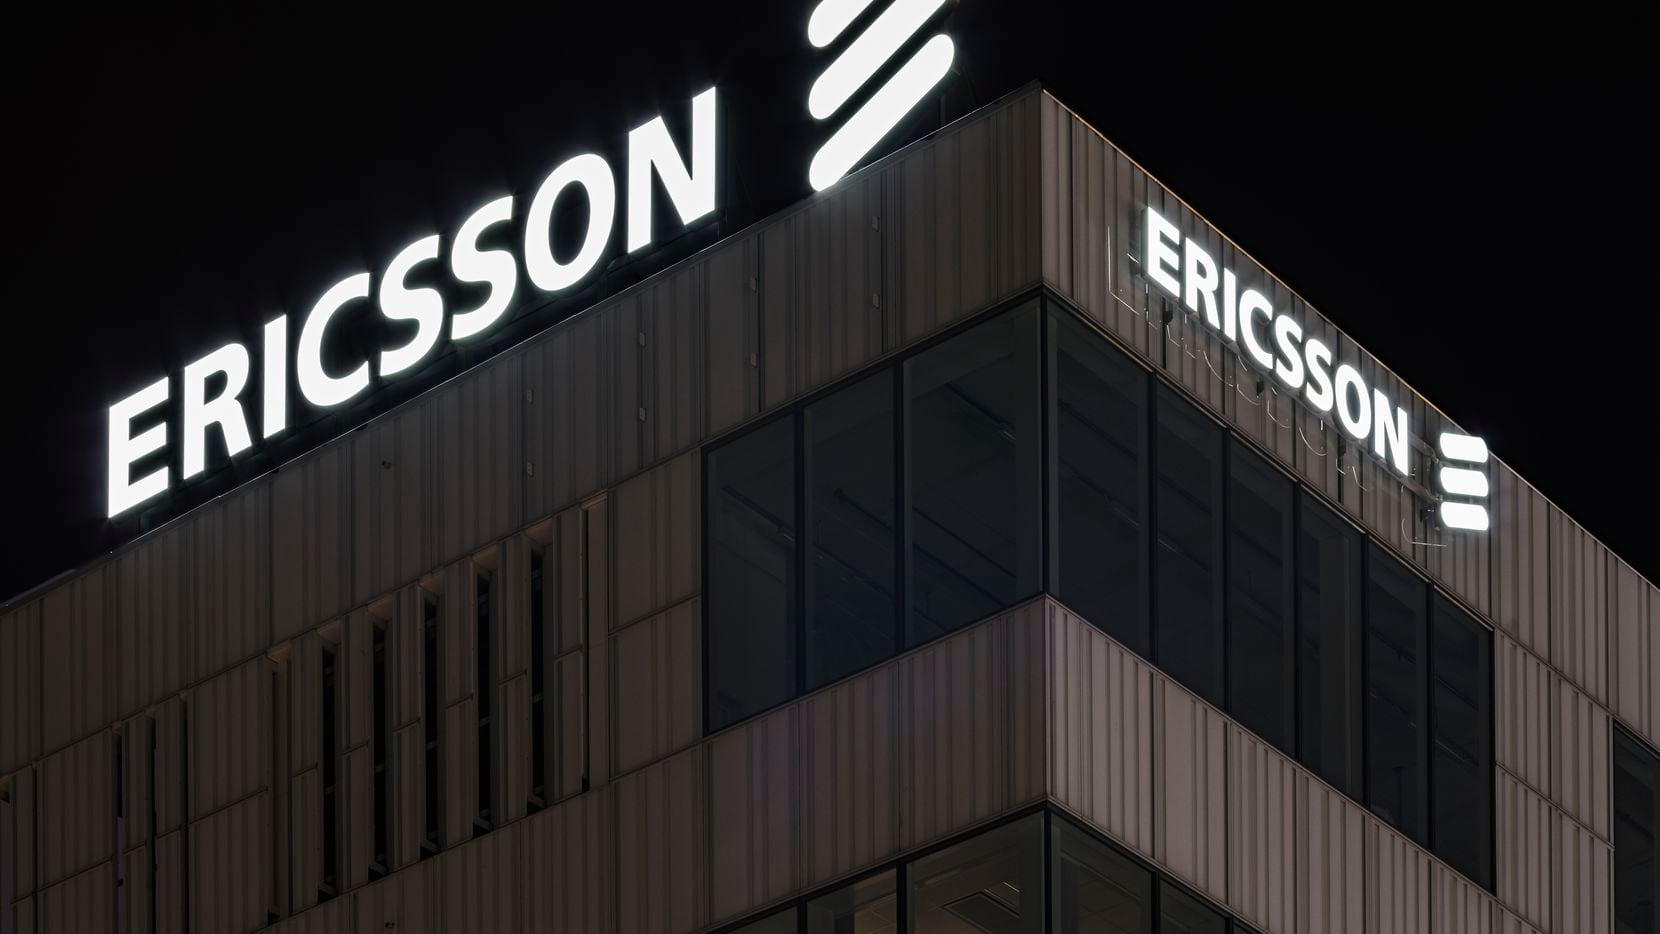 Ericsson, a Swedish telecom company, has its North America headquarters in Plano.